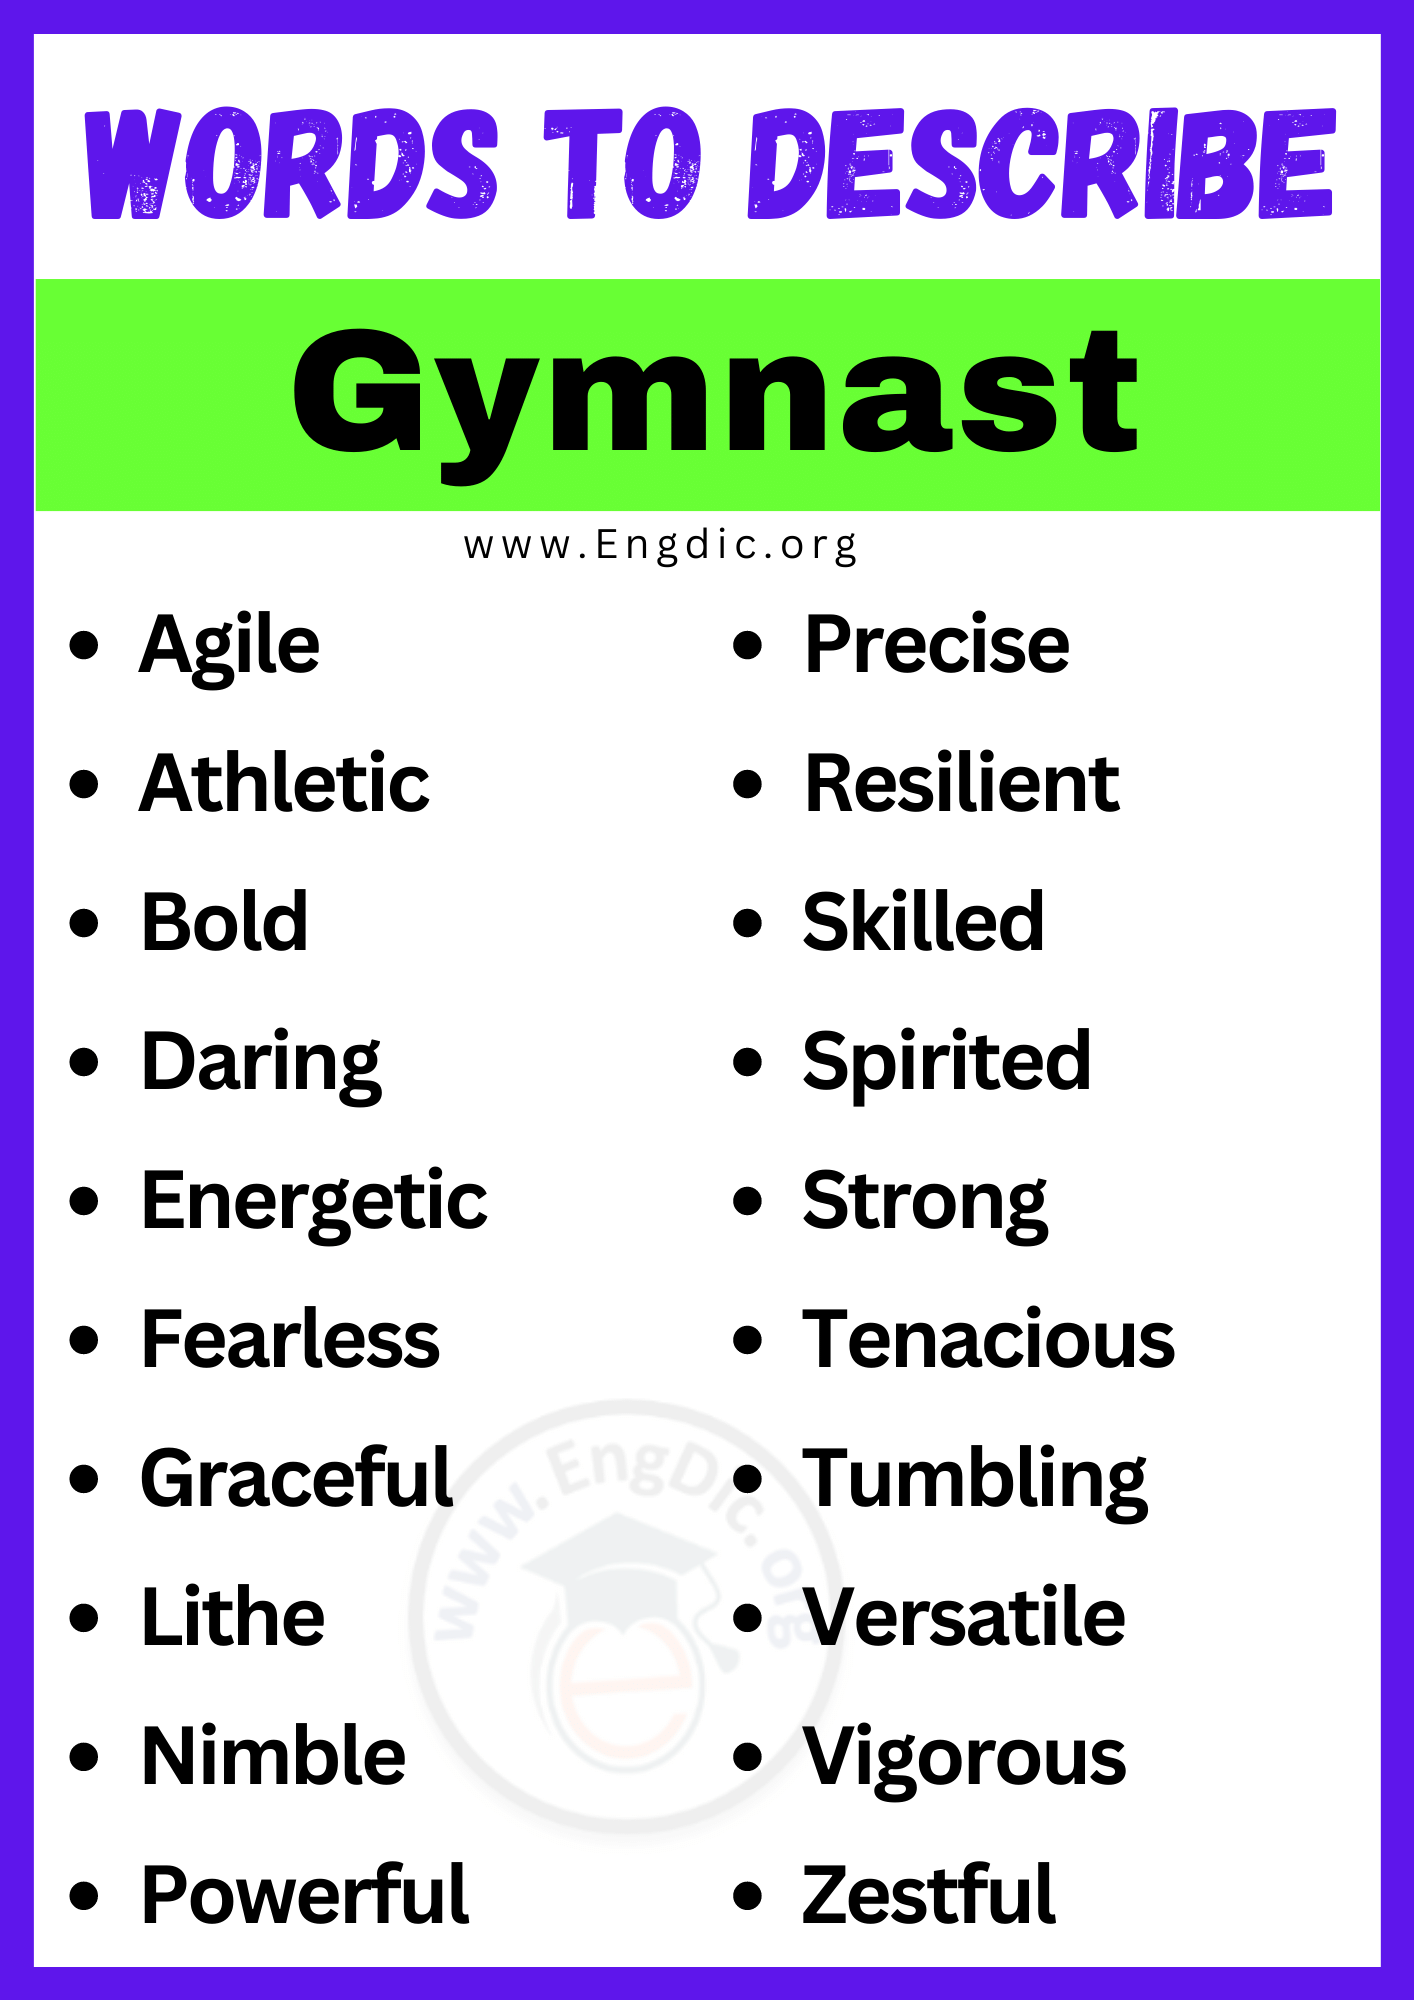 Words to Describe Gymnast